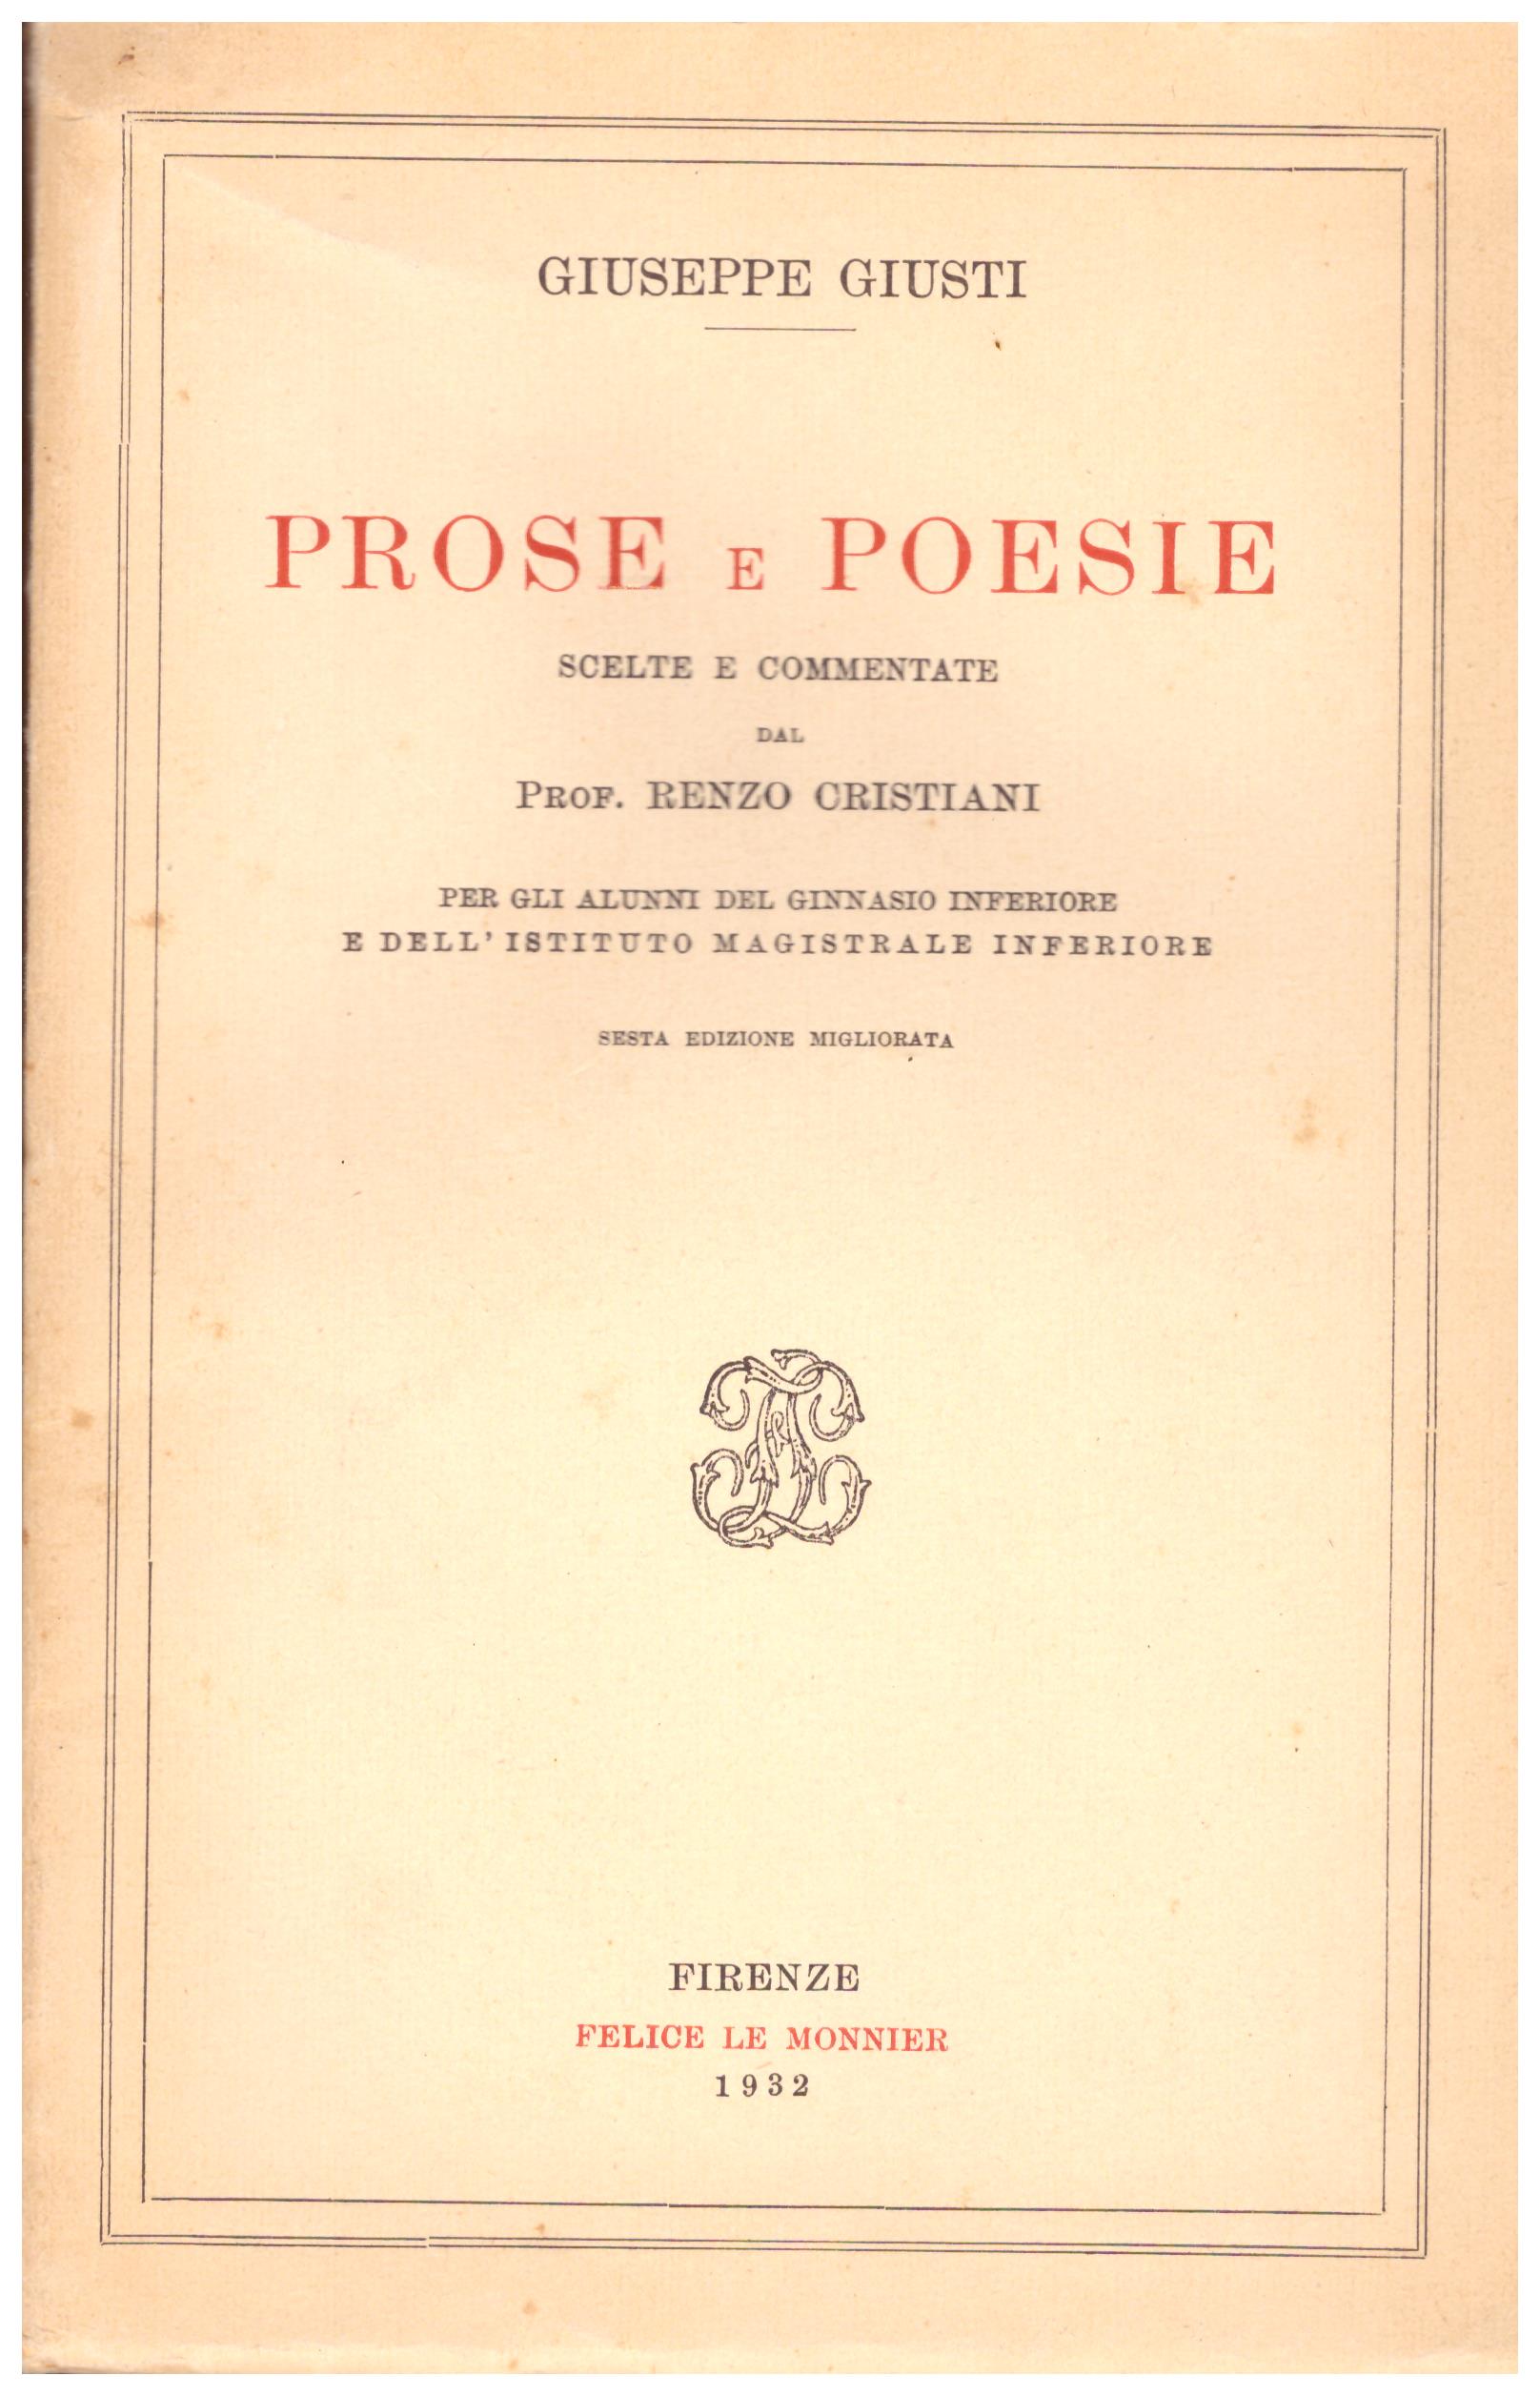 Titolo:  Prose e poesie scelte e commentate    Autore: Giuseppe Giusti    Editore: Felice Le Monier, Firenze 1932